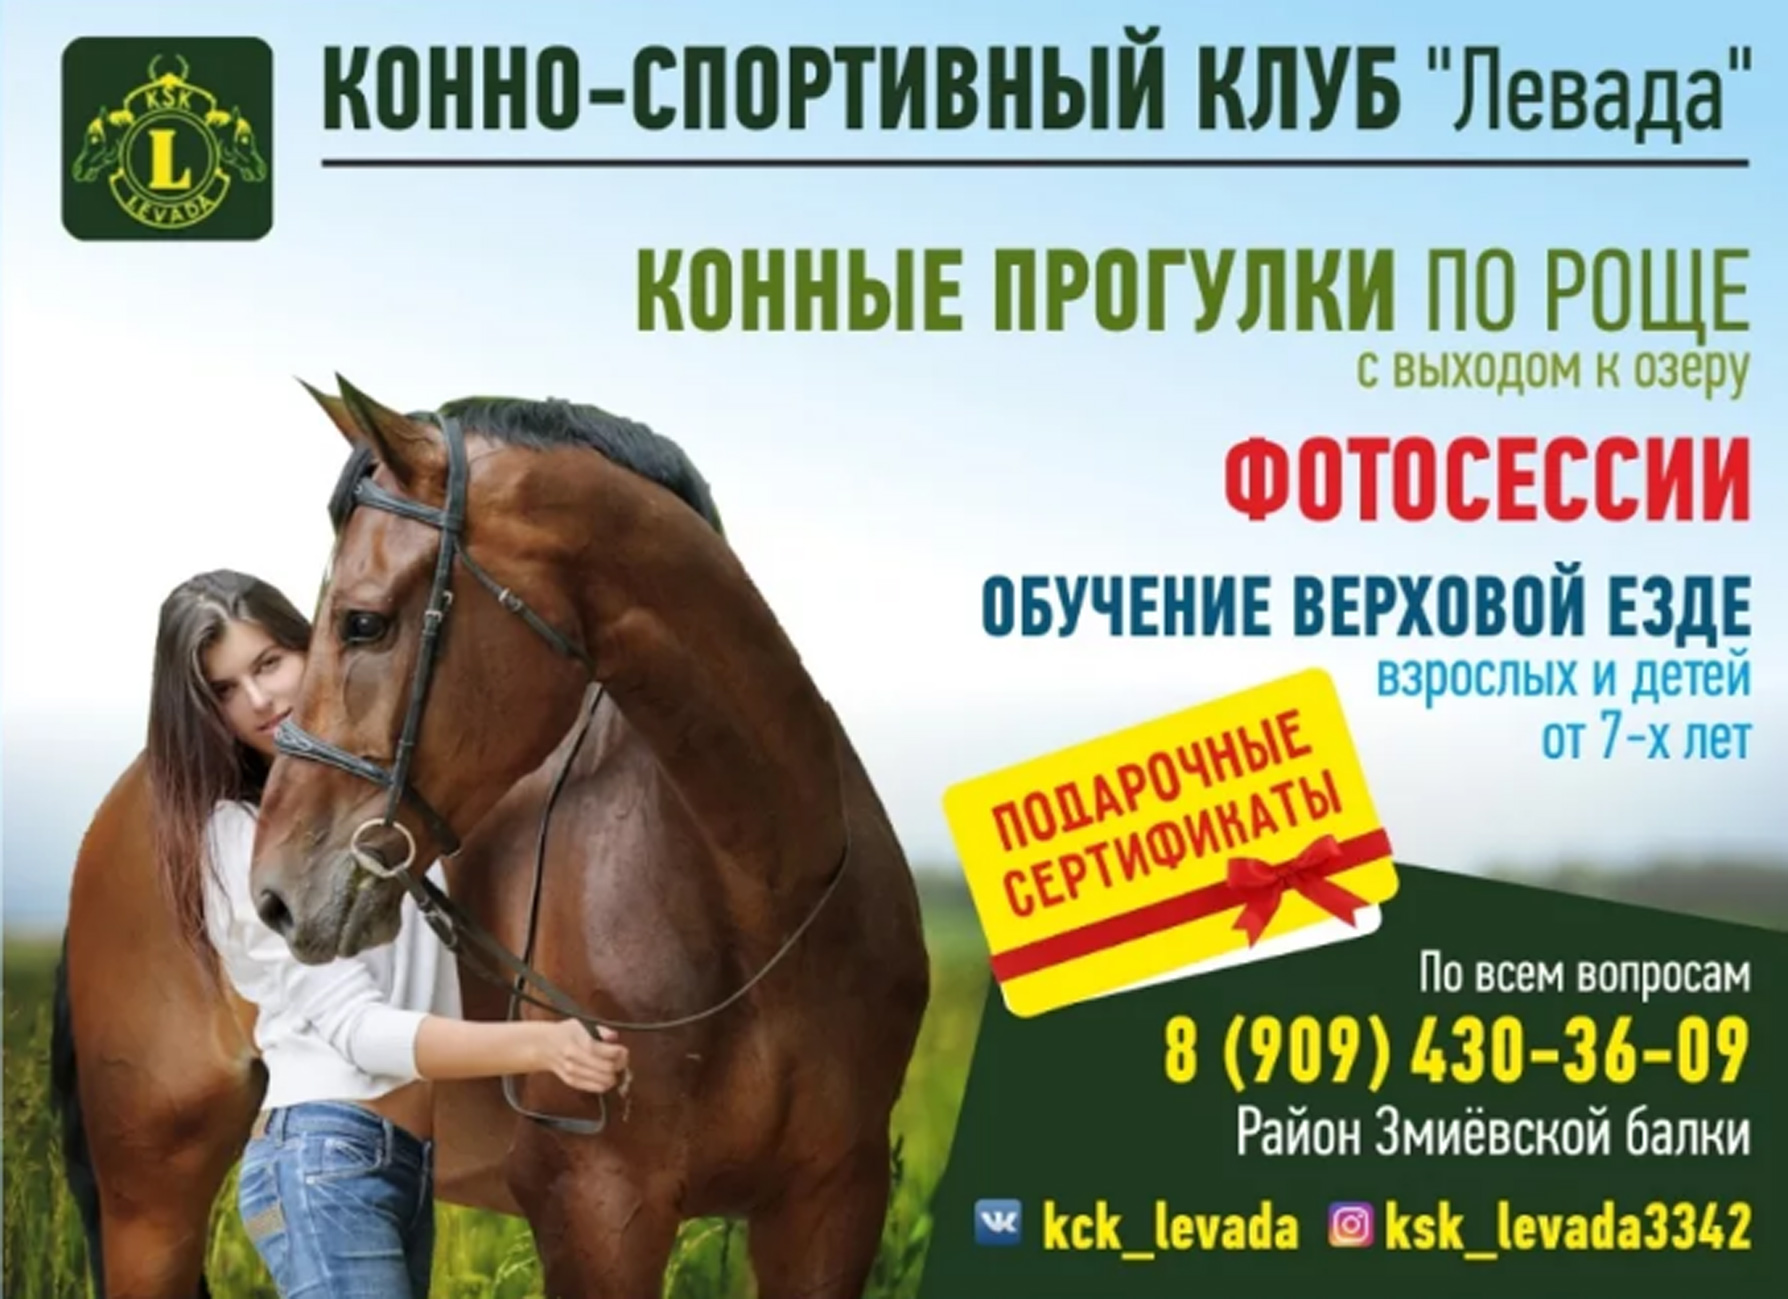 Кск аренда. Реклама конного клуба. Конные прогулки реклама. Реклама конного спорта. Конно-спортивный клуб реклама.